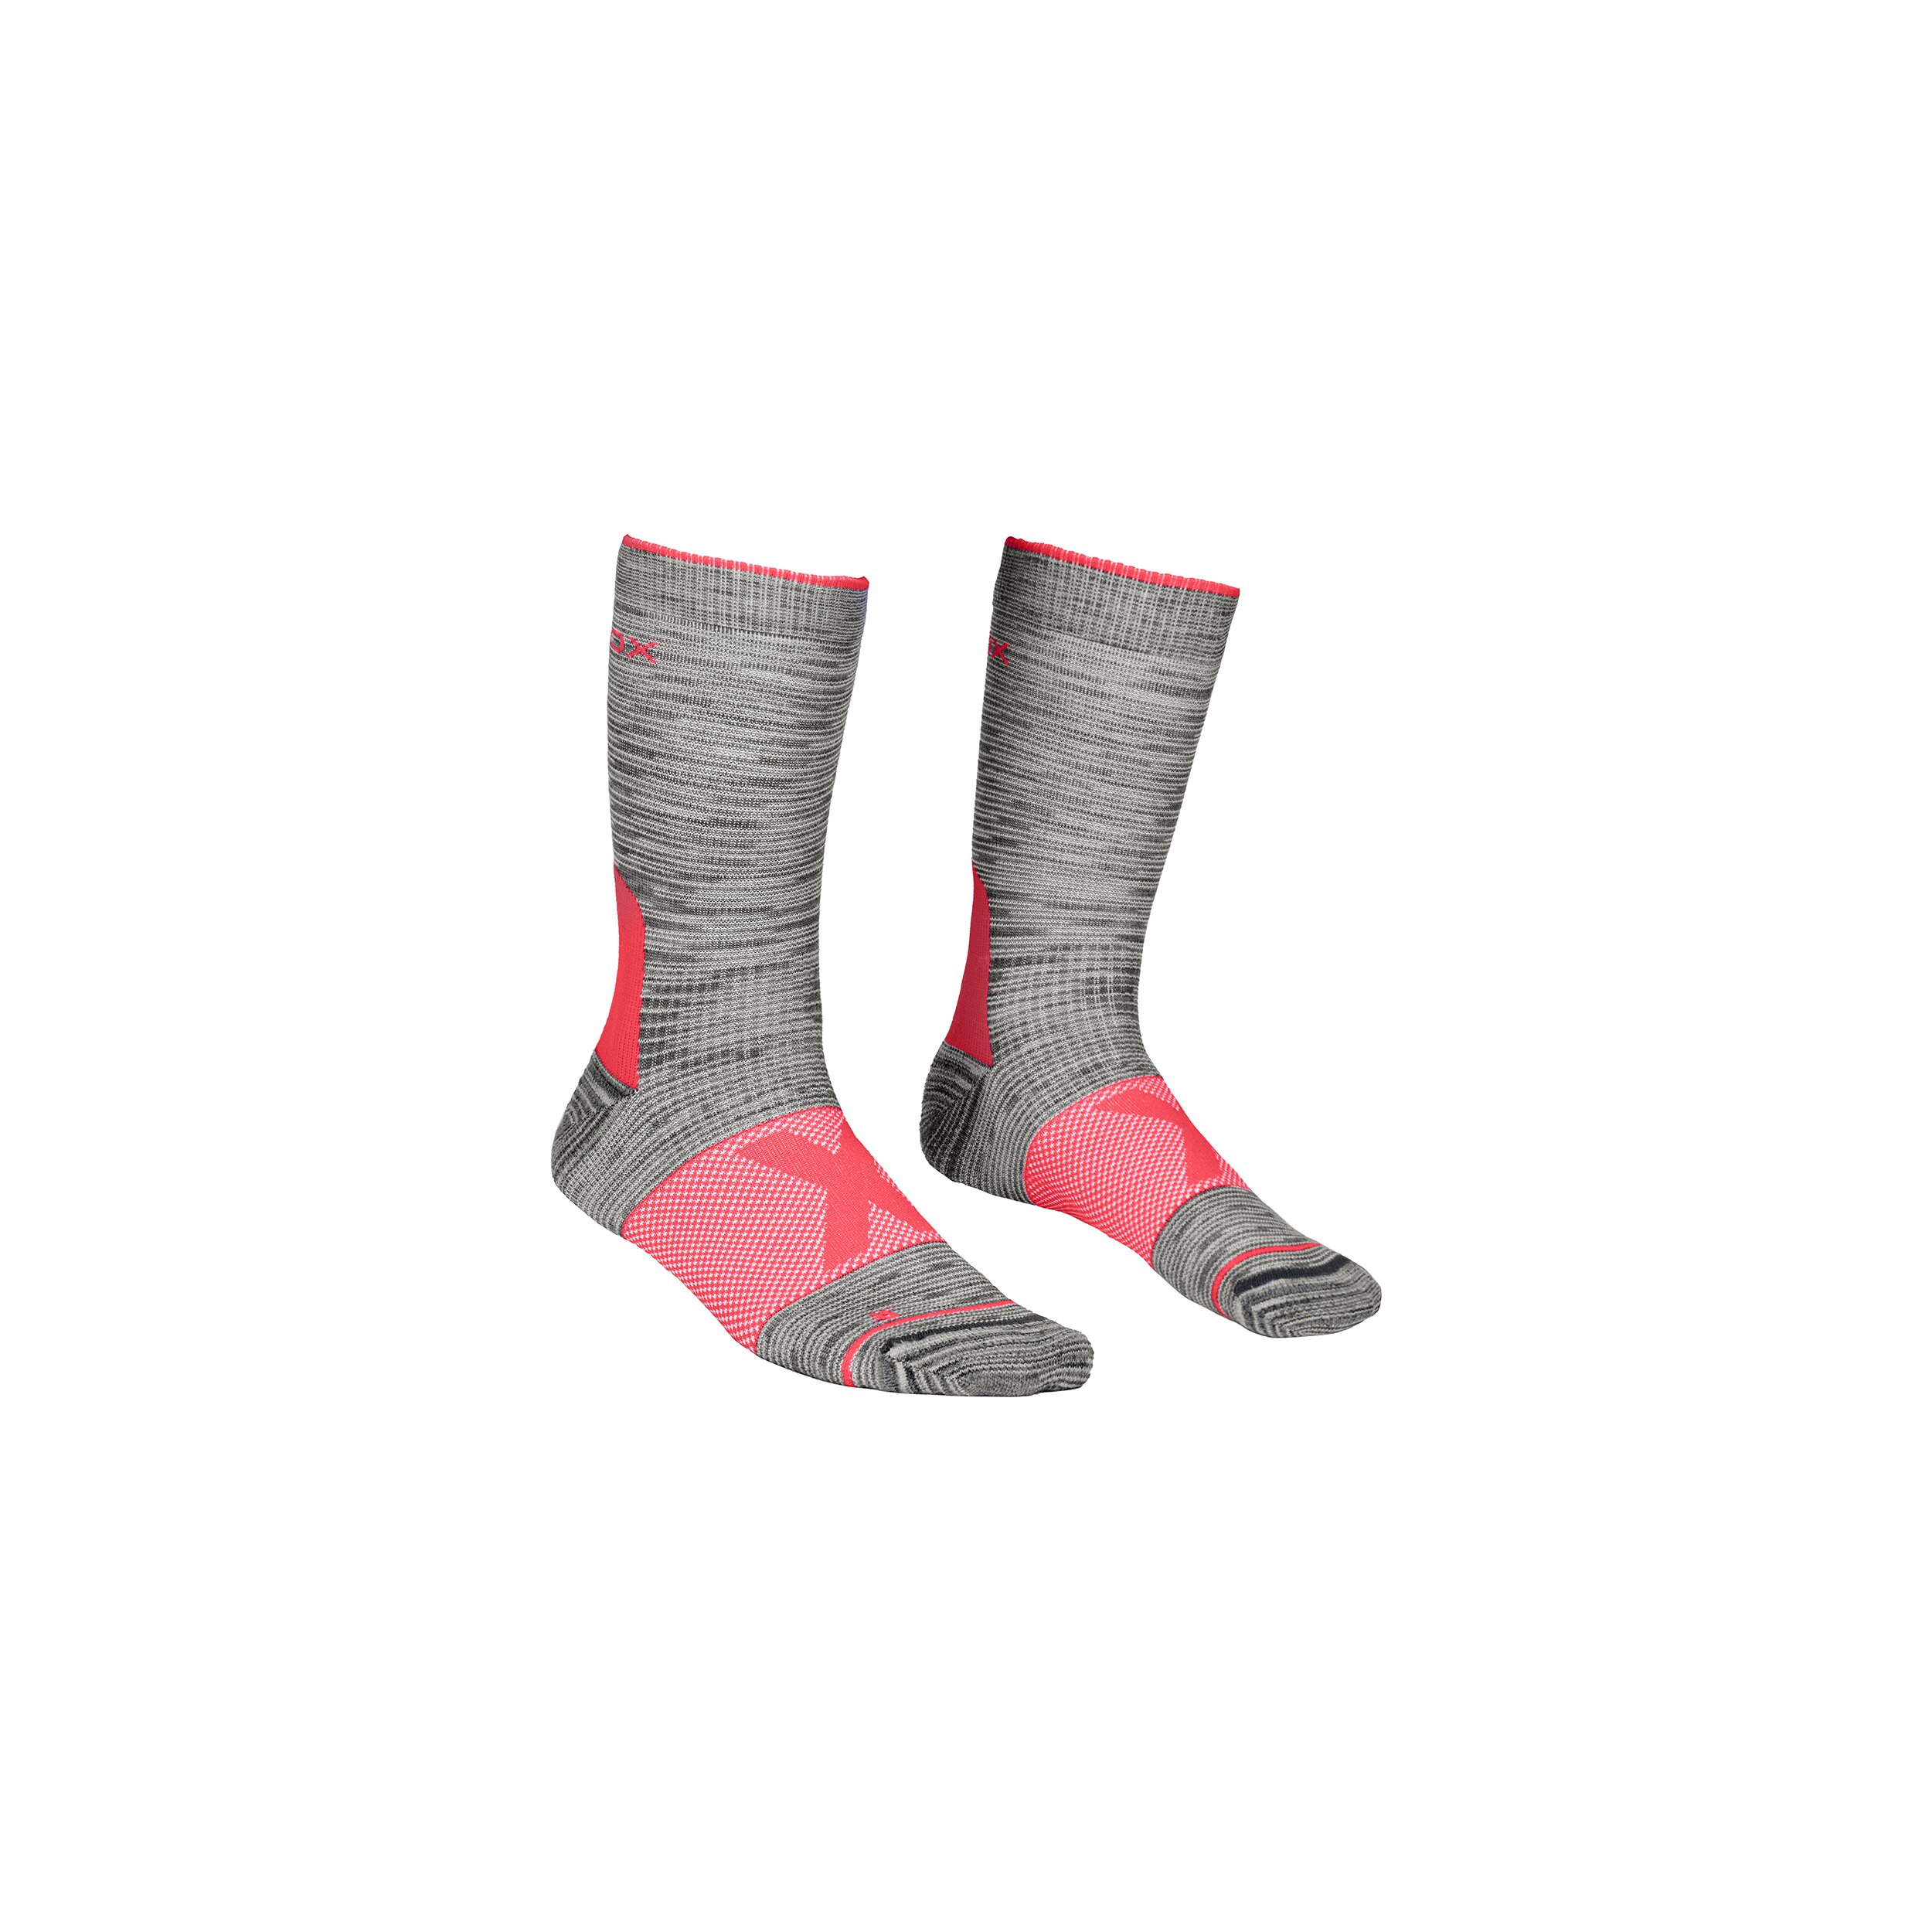 Y Form Kompression lange Socke Frauen Männer Ski Socken mit gepolstertem 